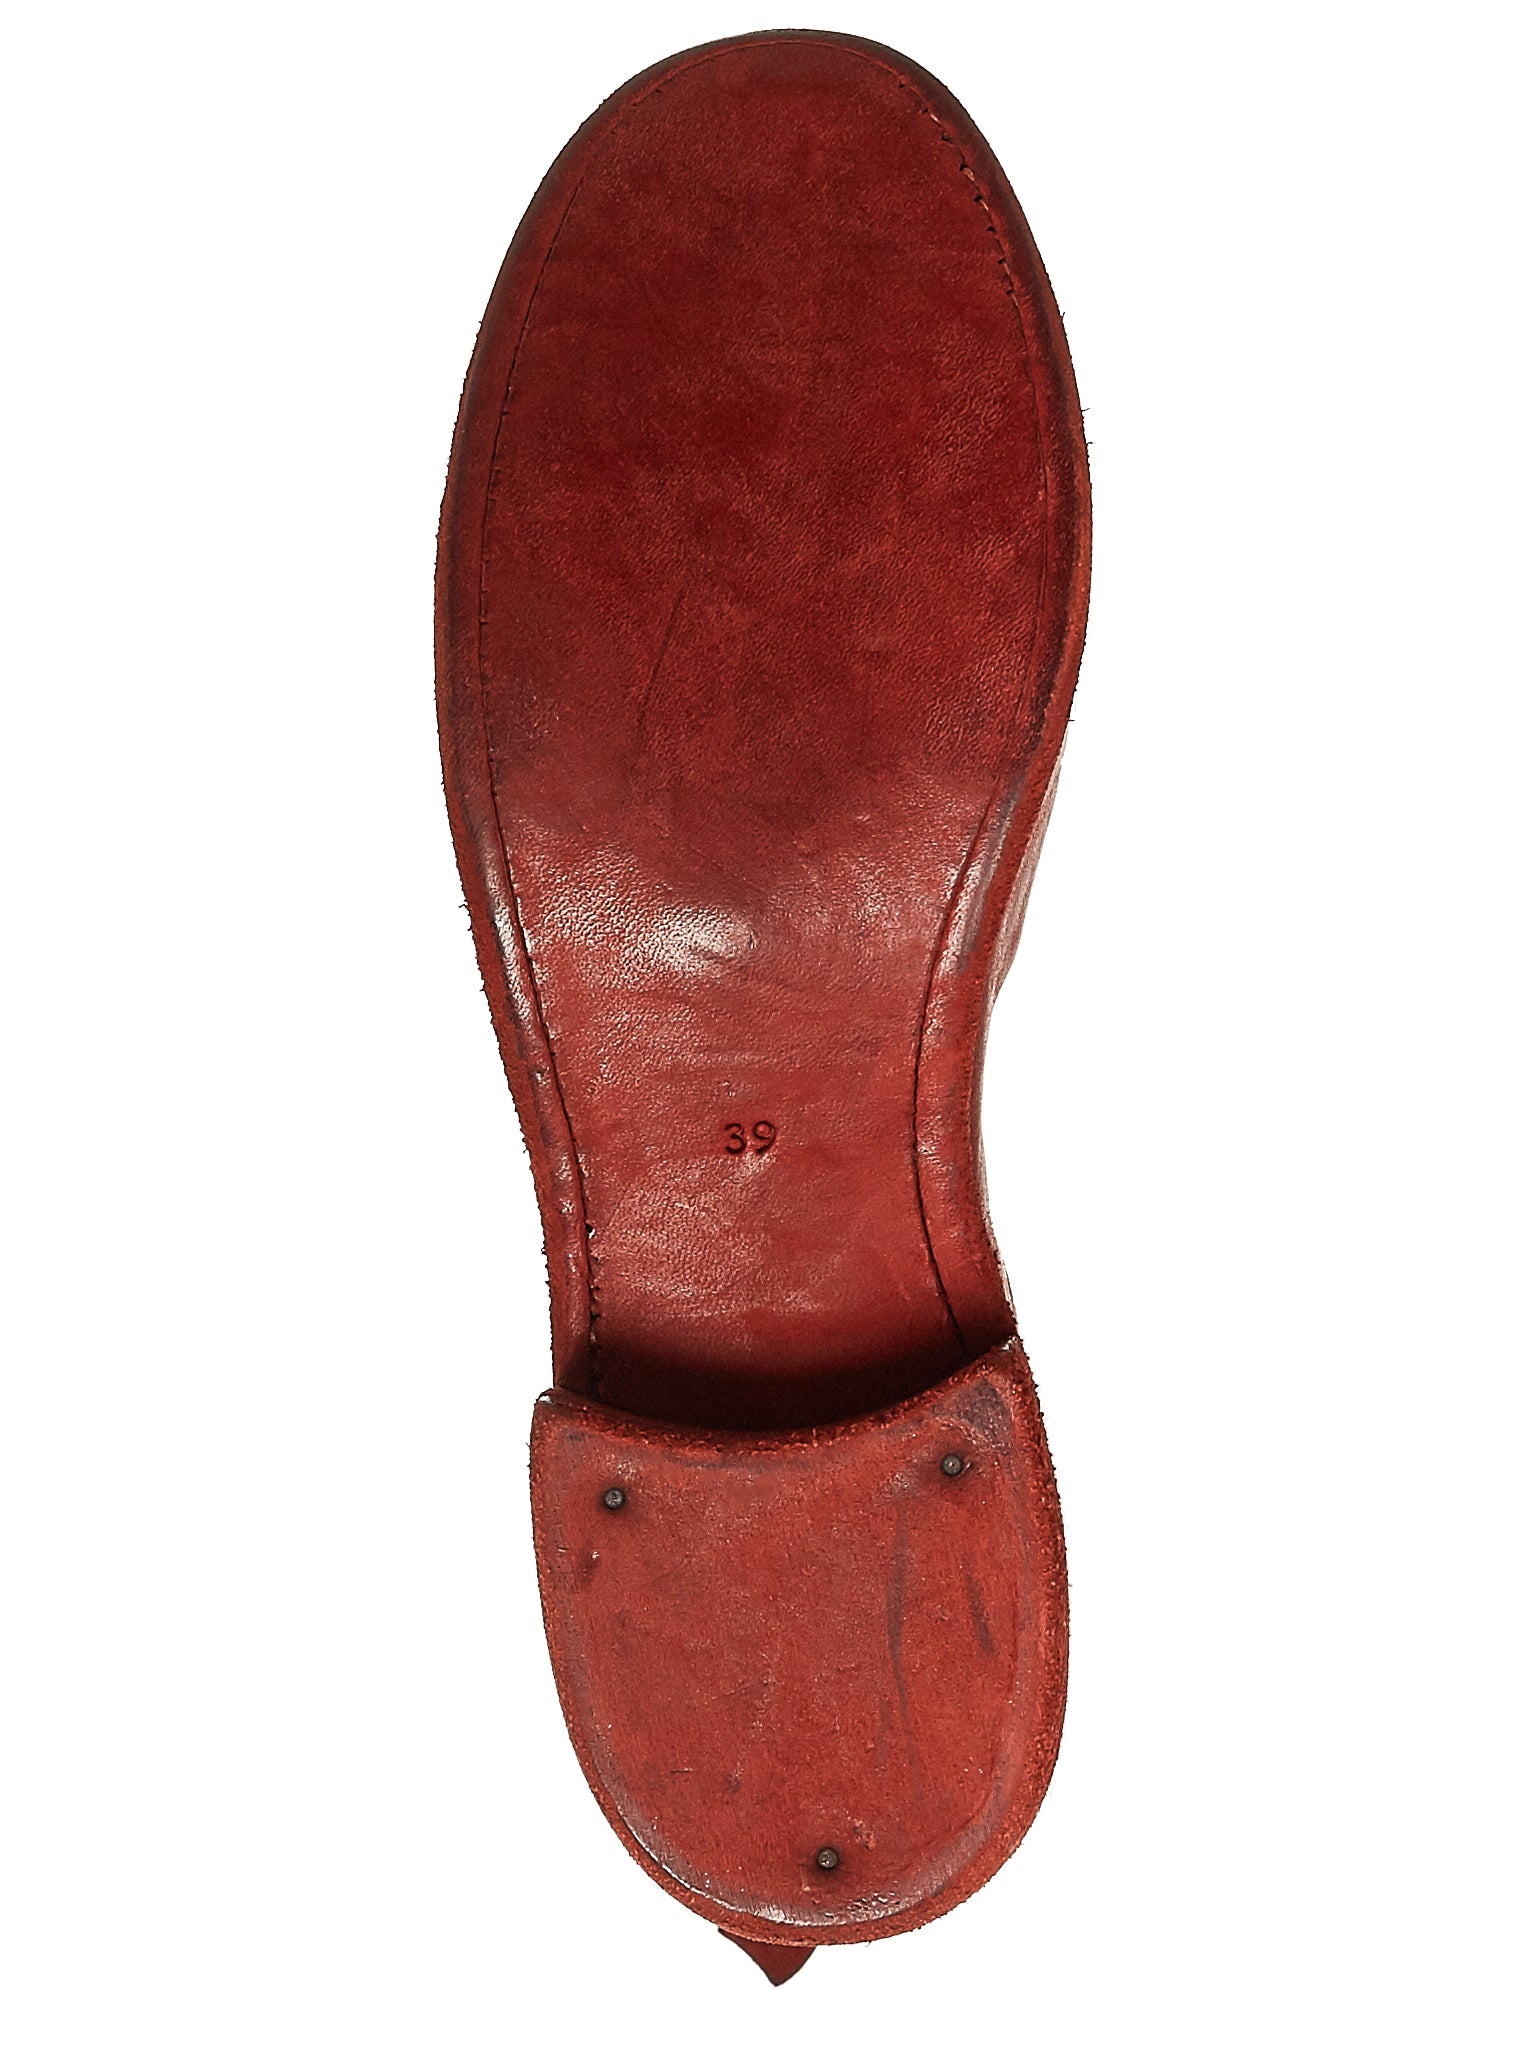 PL2 Soft Horse Leather Boots (PL2-SOFT-HORSE-FG-1006T)